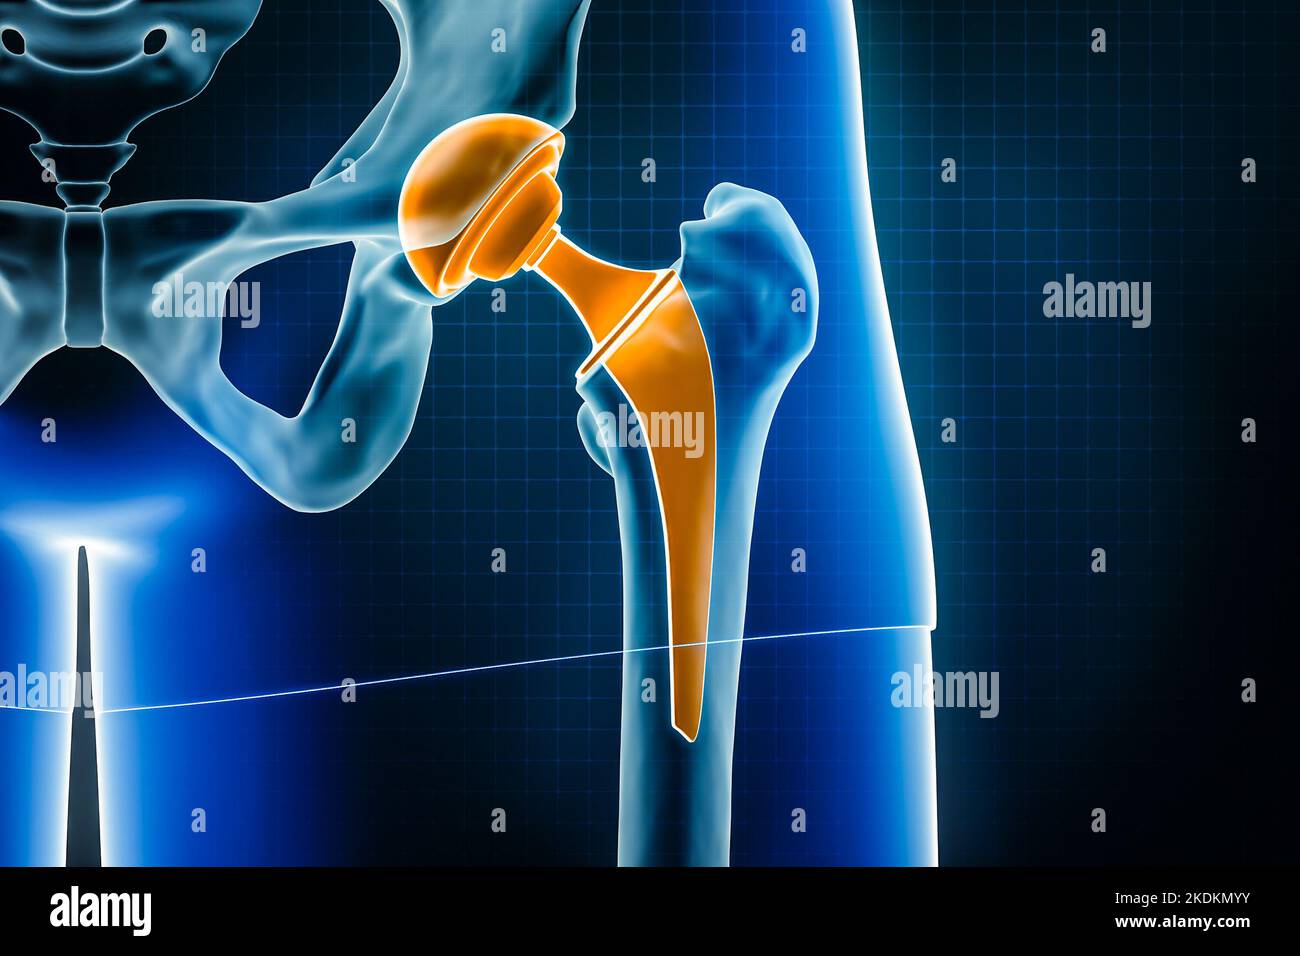 Illustrazione del rendering a raggi X 3D della protesi dell'anca. Intervento chirurgico di sostituzione totale dell'articolazione dell'anca o artroplastica, medico e sanitario, artrite, patologia, sci Foto Stock